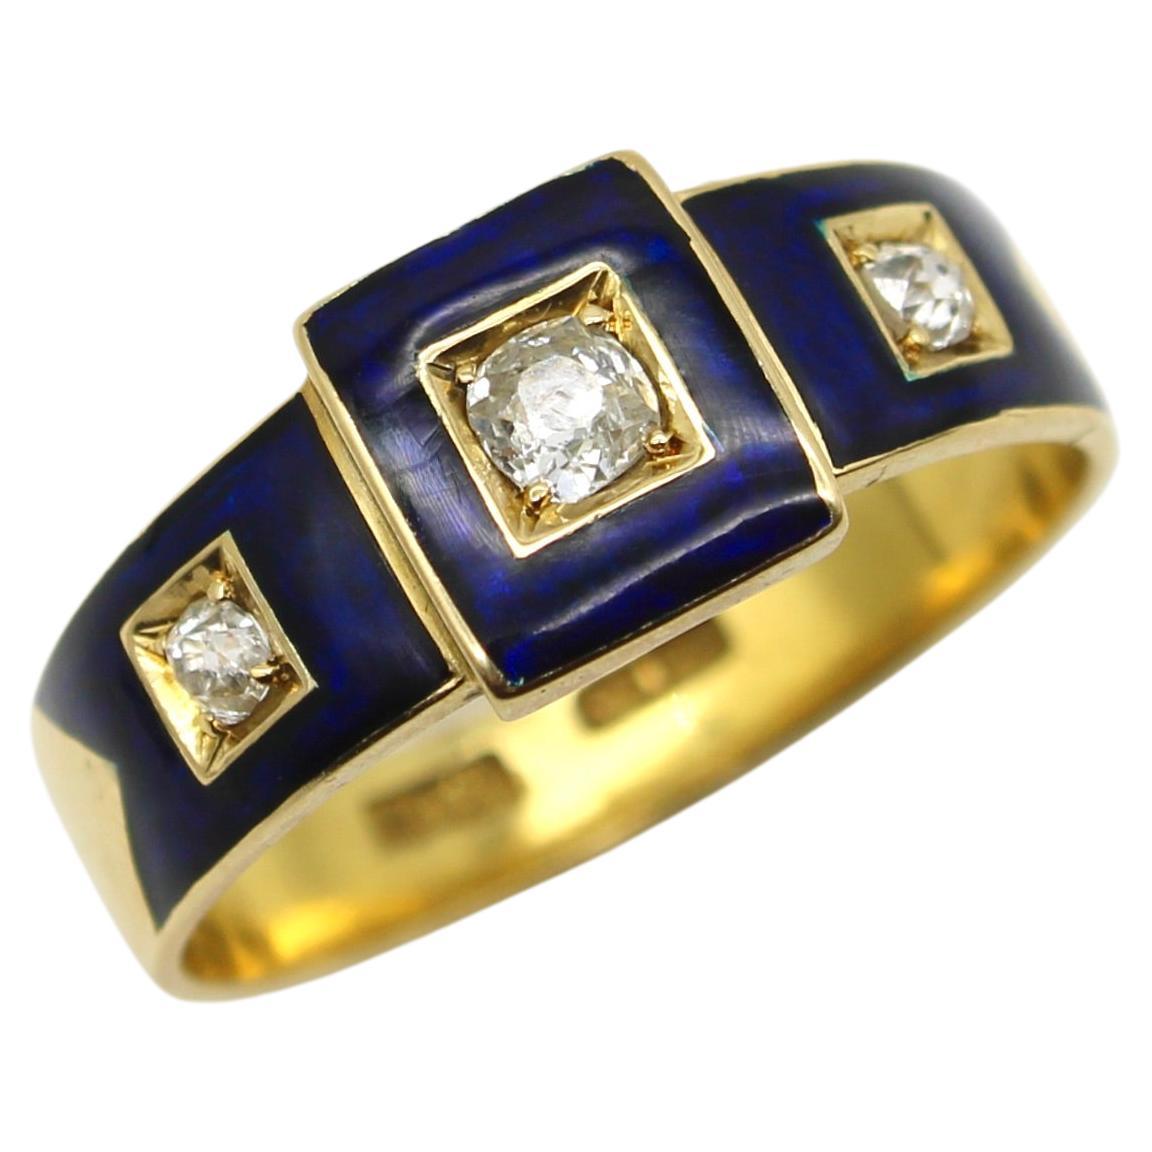 18 Karat Gold Frühviktorianischer Diamant Trilogy-Ring mit blauen Emaille-Details 